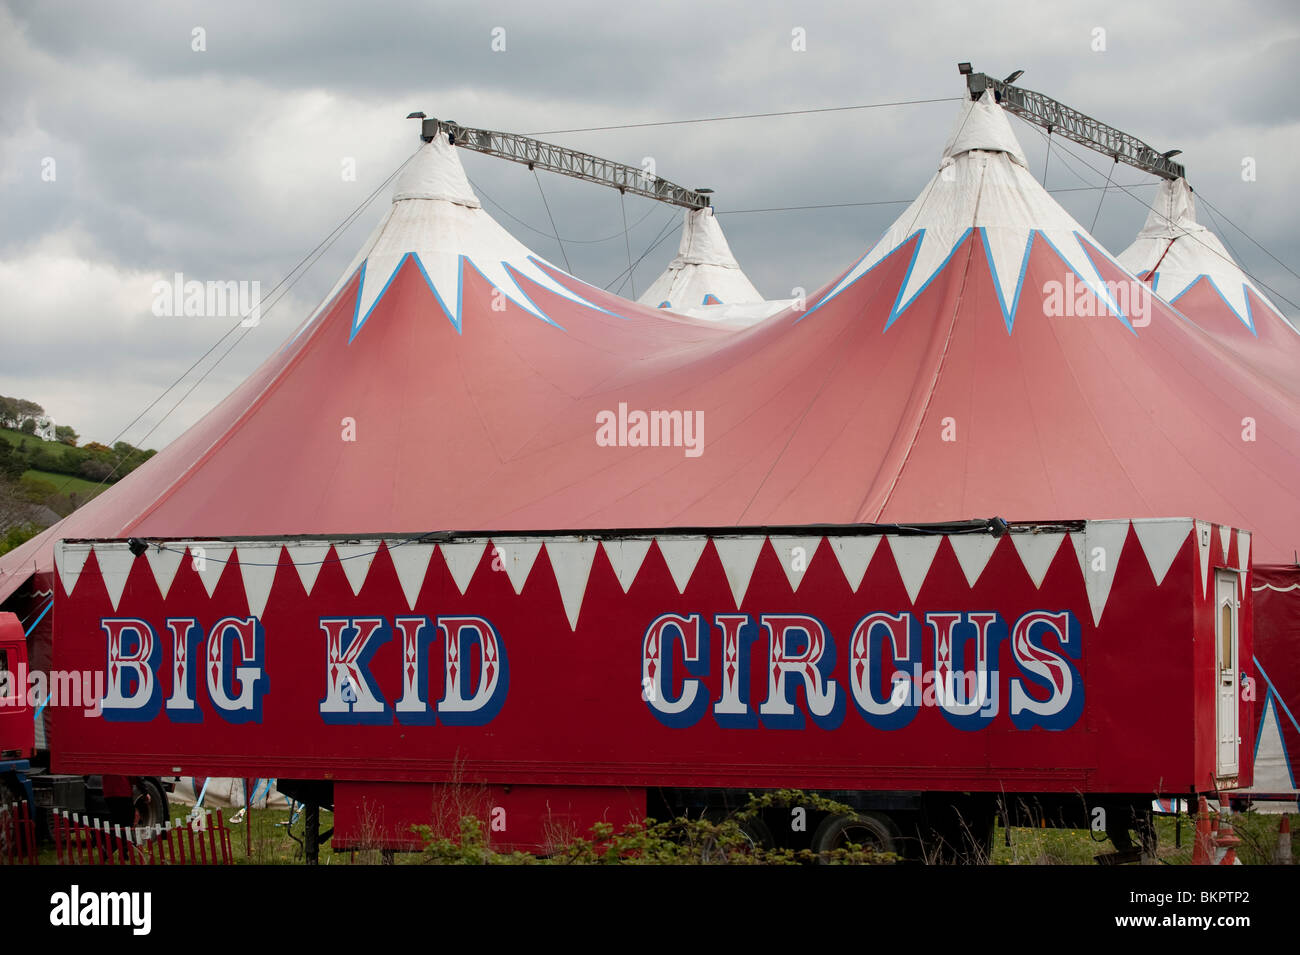 Il capretto grande circo itinerante di colore rosso big top tenda, visitando Aberystwyth Wales UK Foto Stock